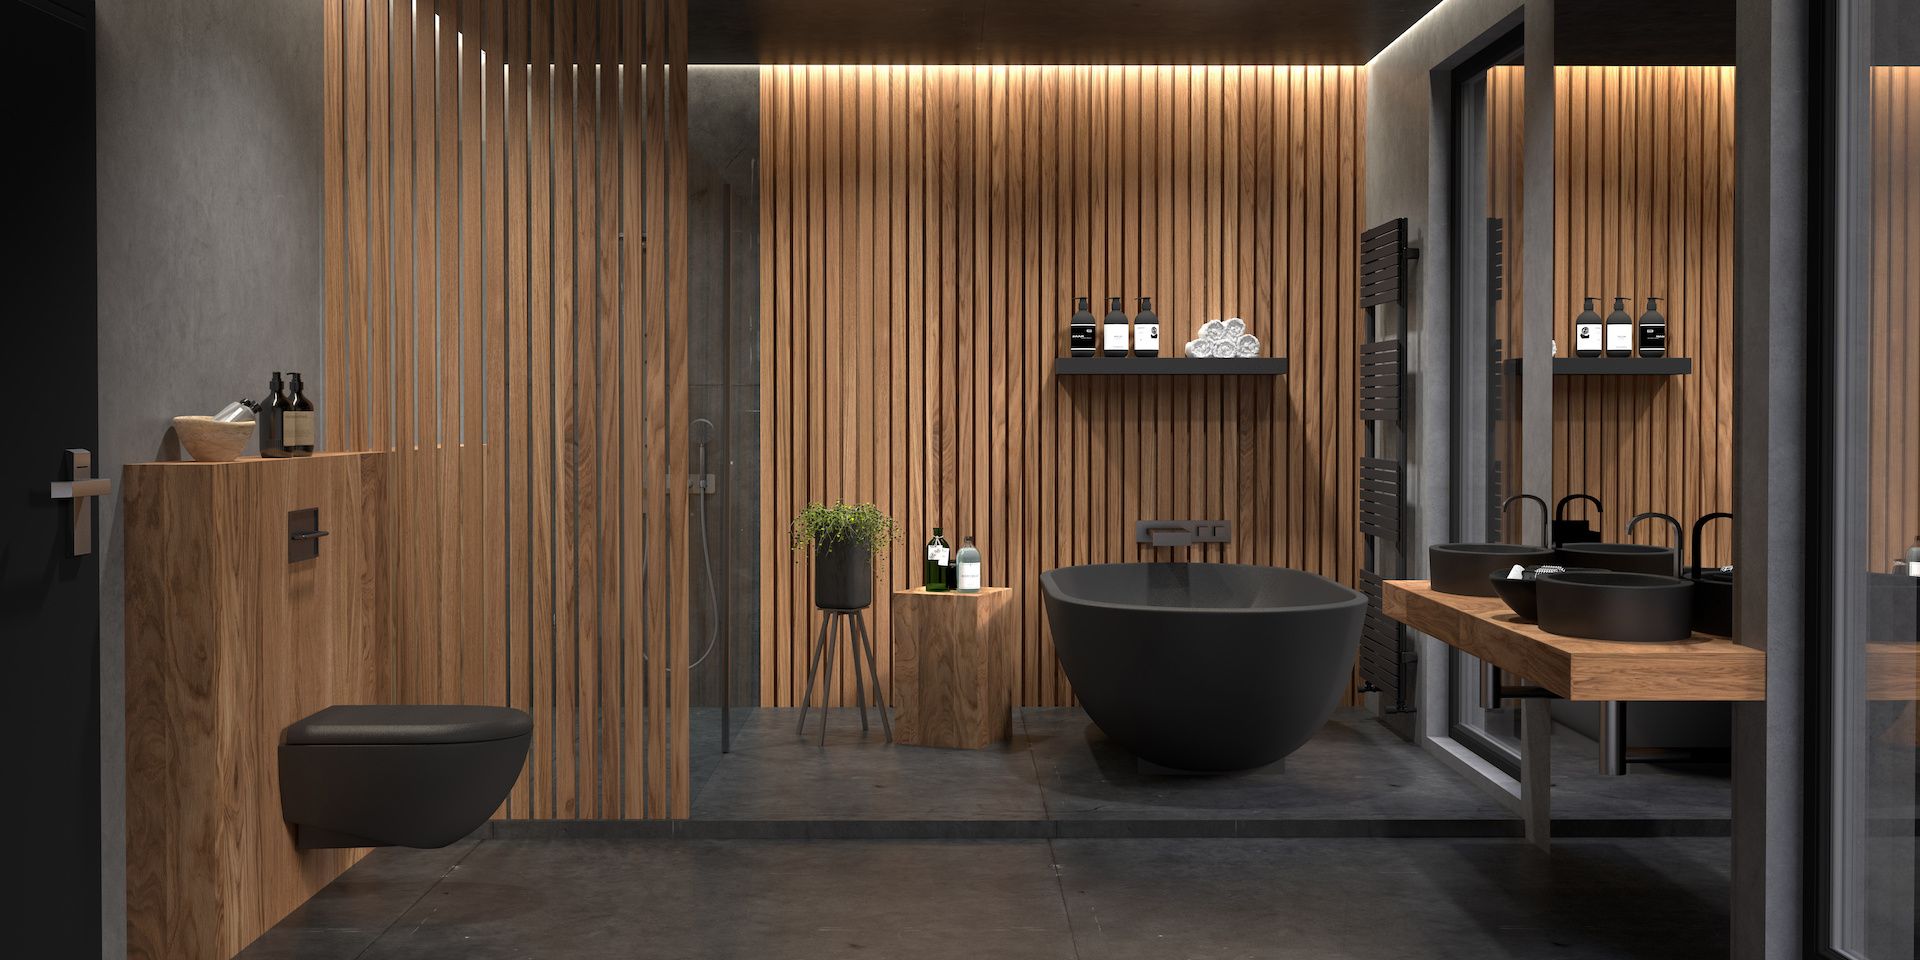 Salle de bains moderne avec des tasseaux de bois et une baignoire noire